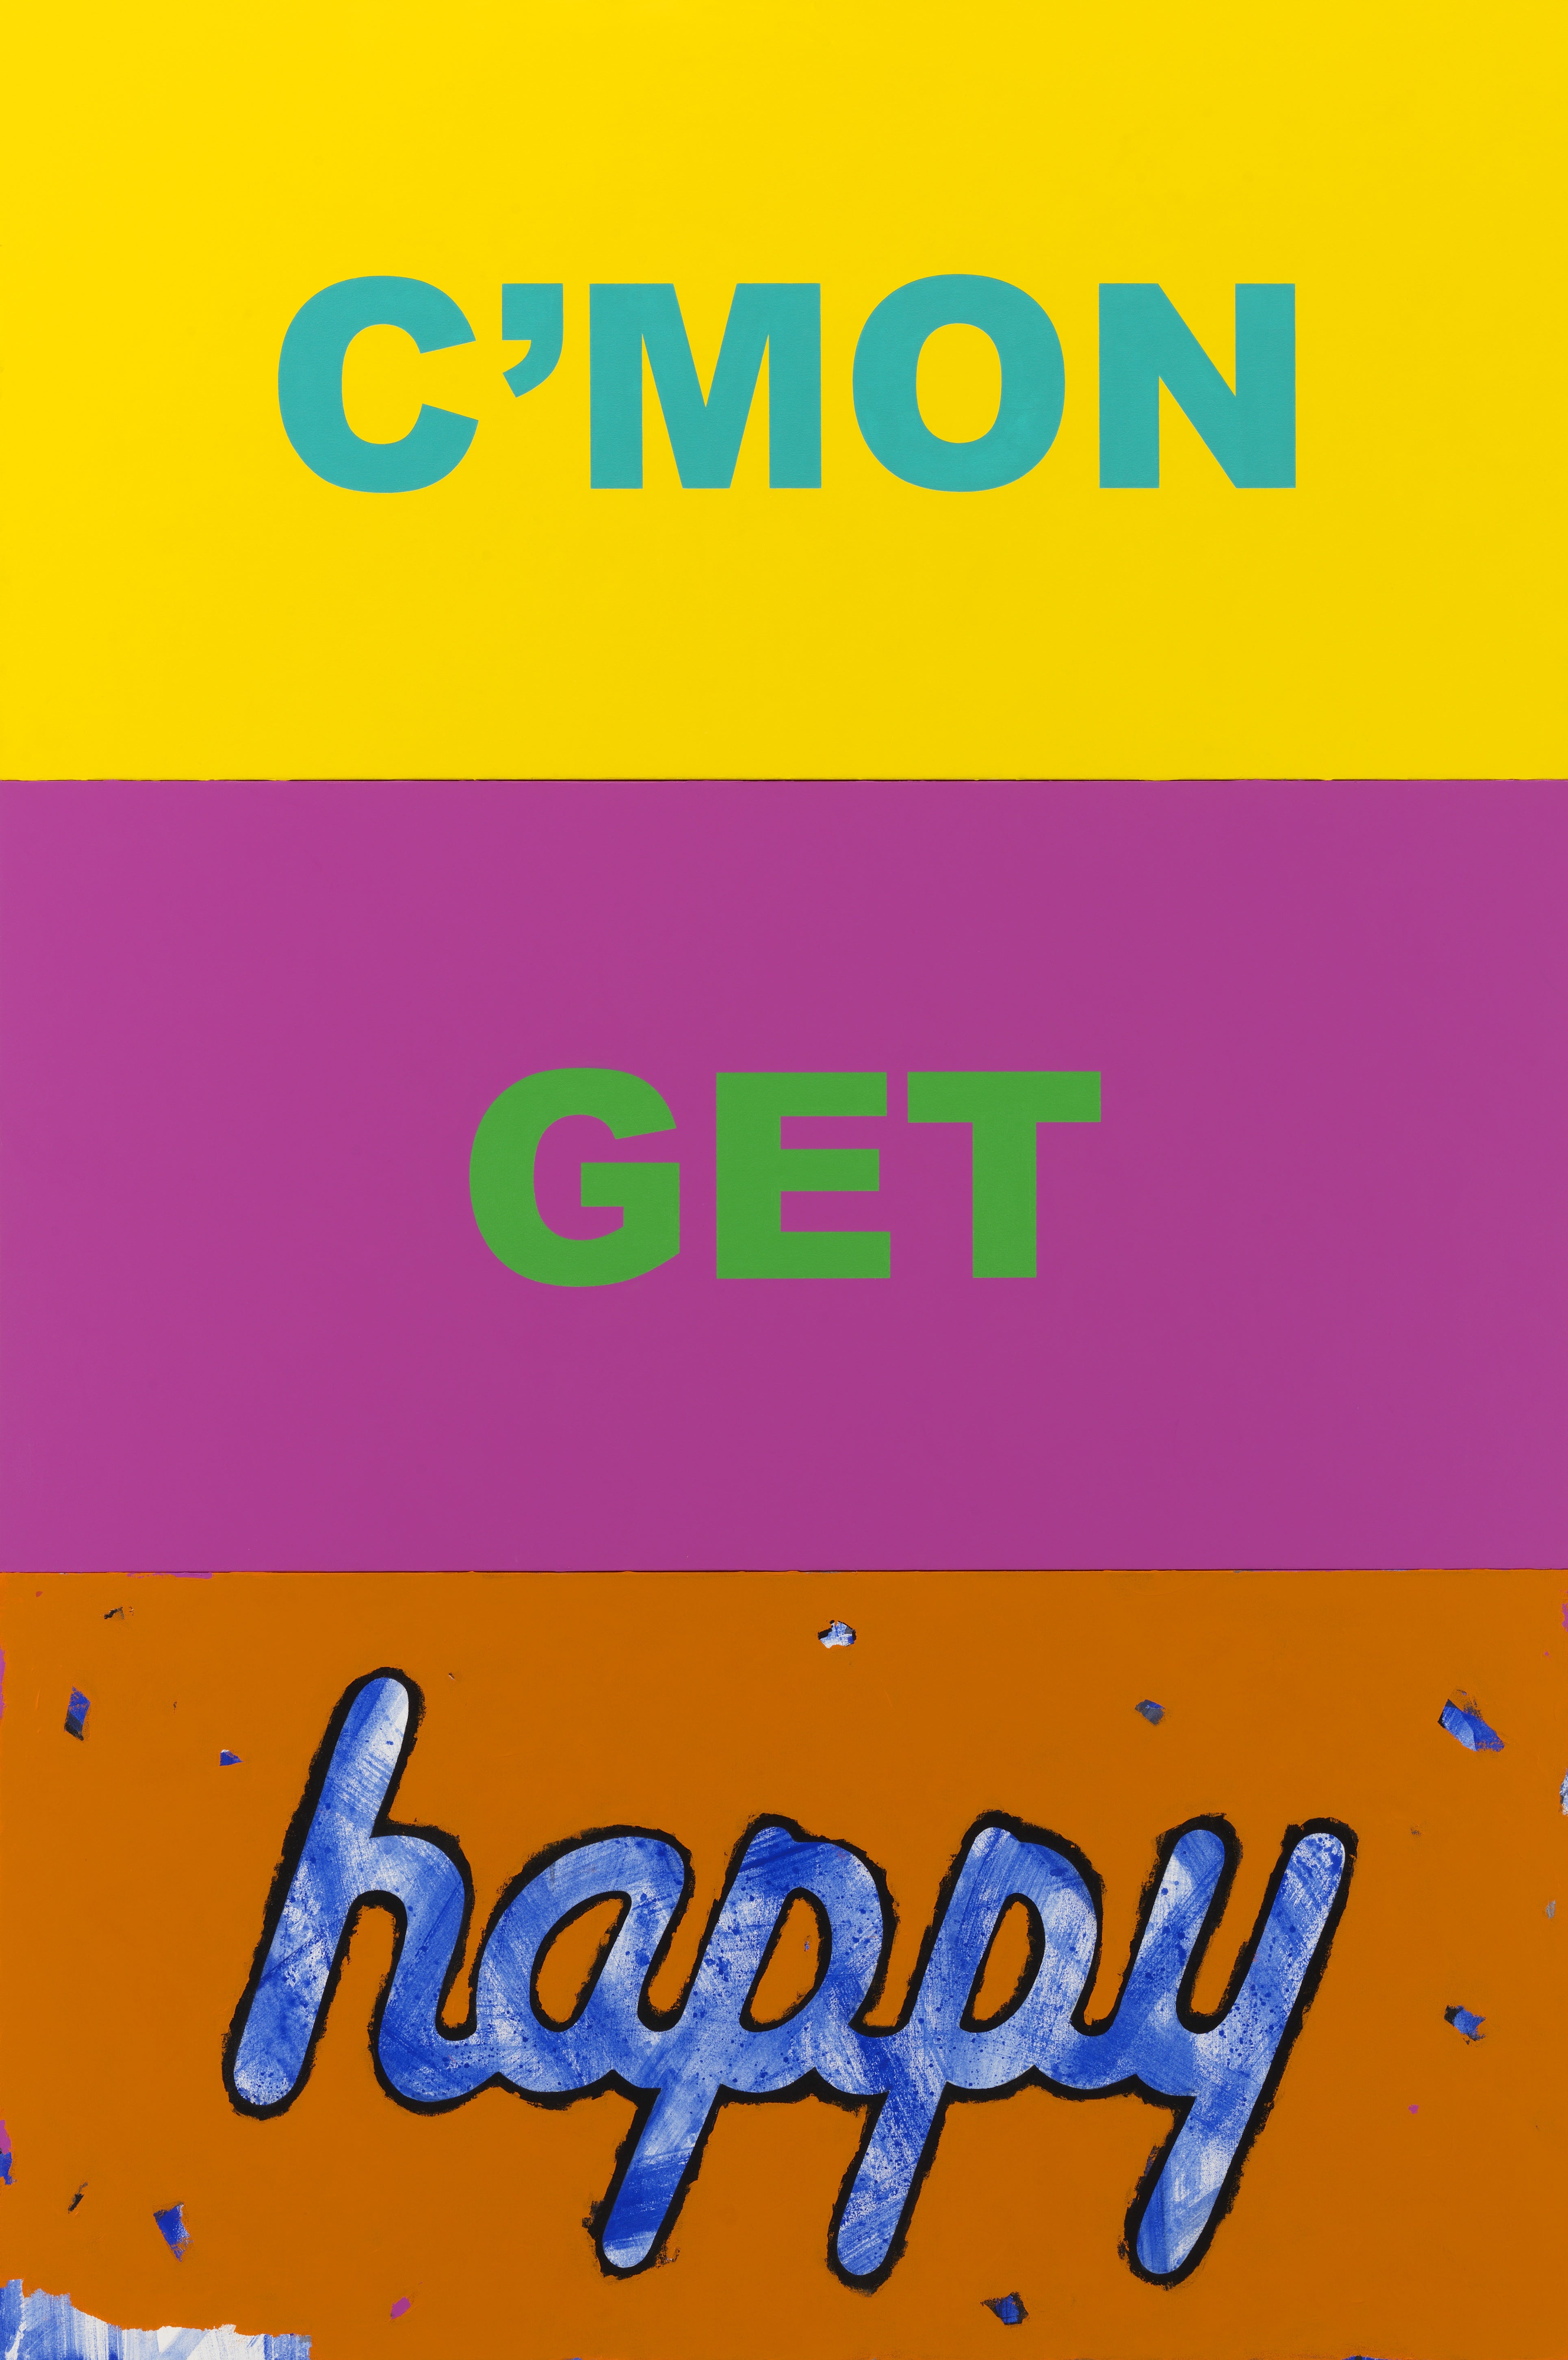 C'mon Get Happy - Painting by Deborah Kass